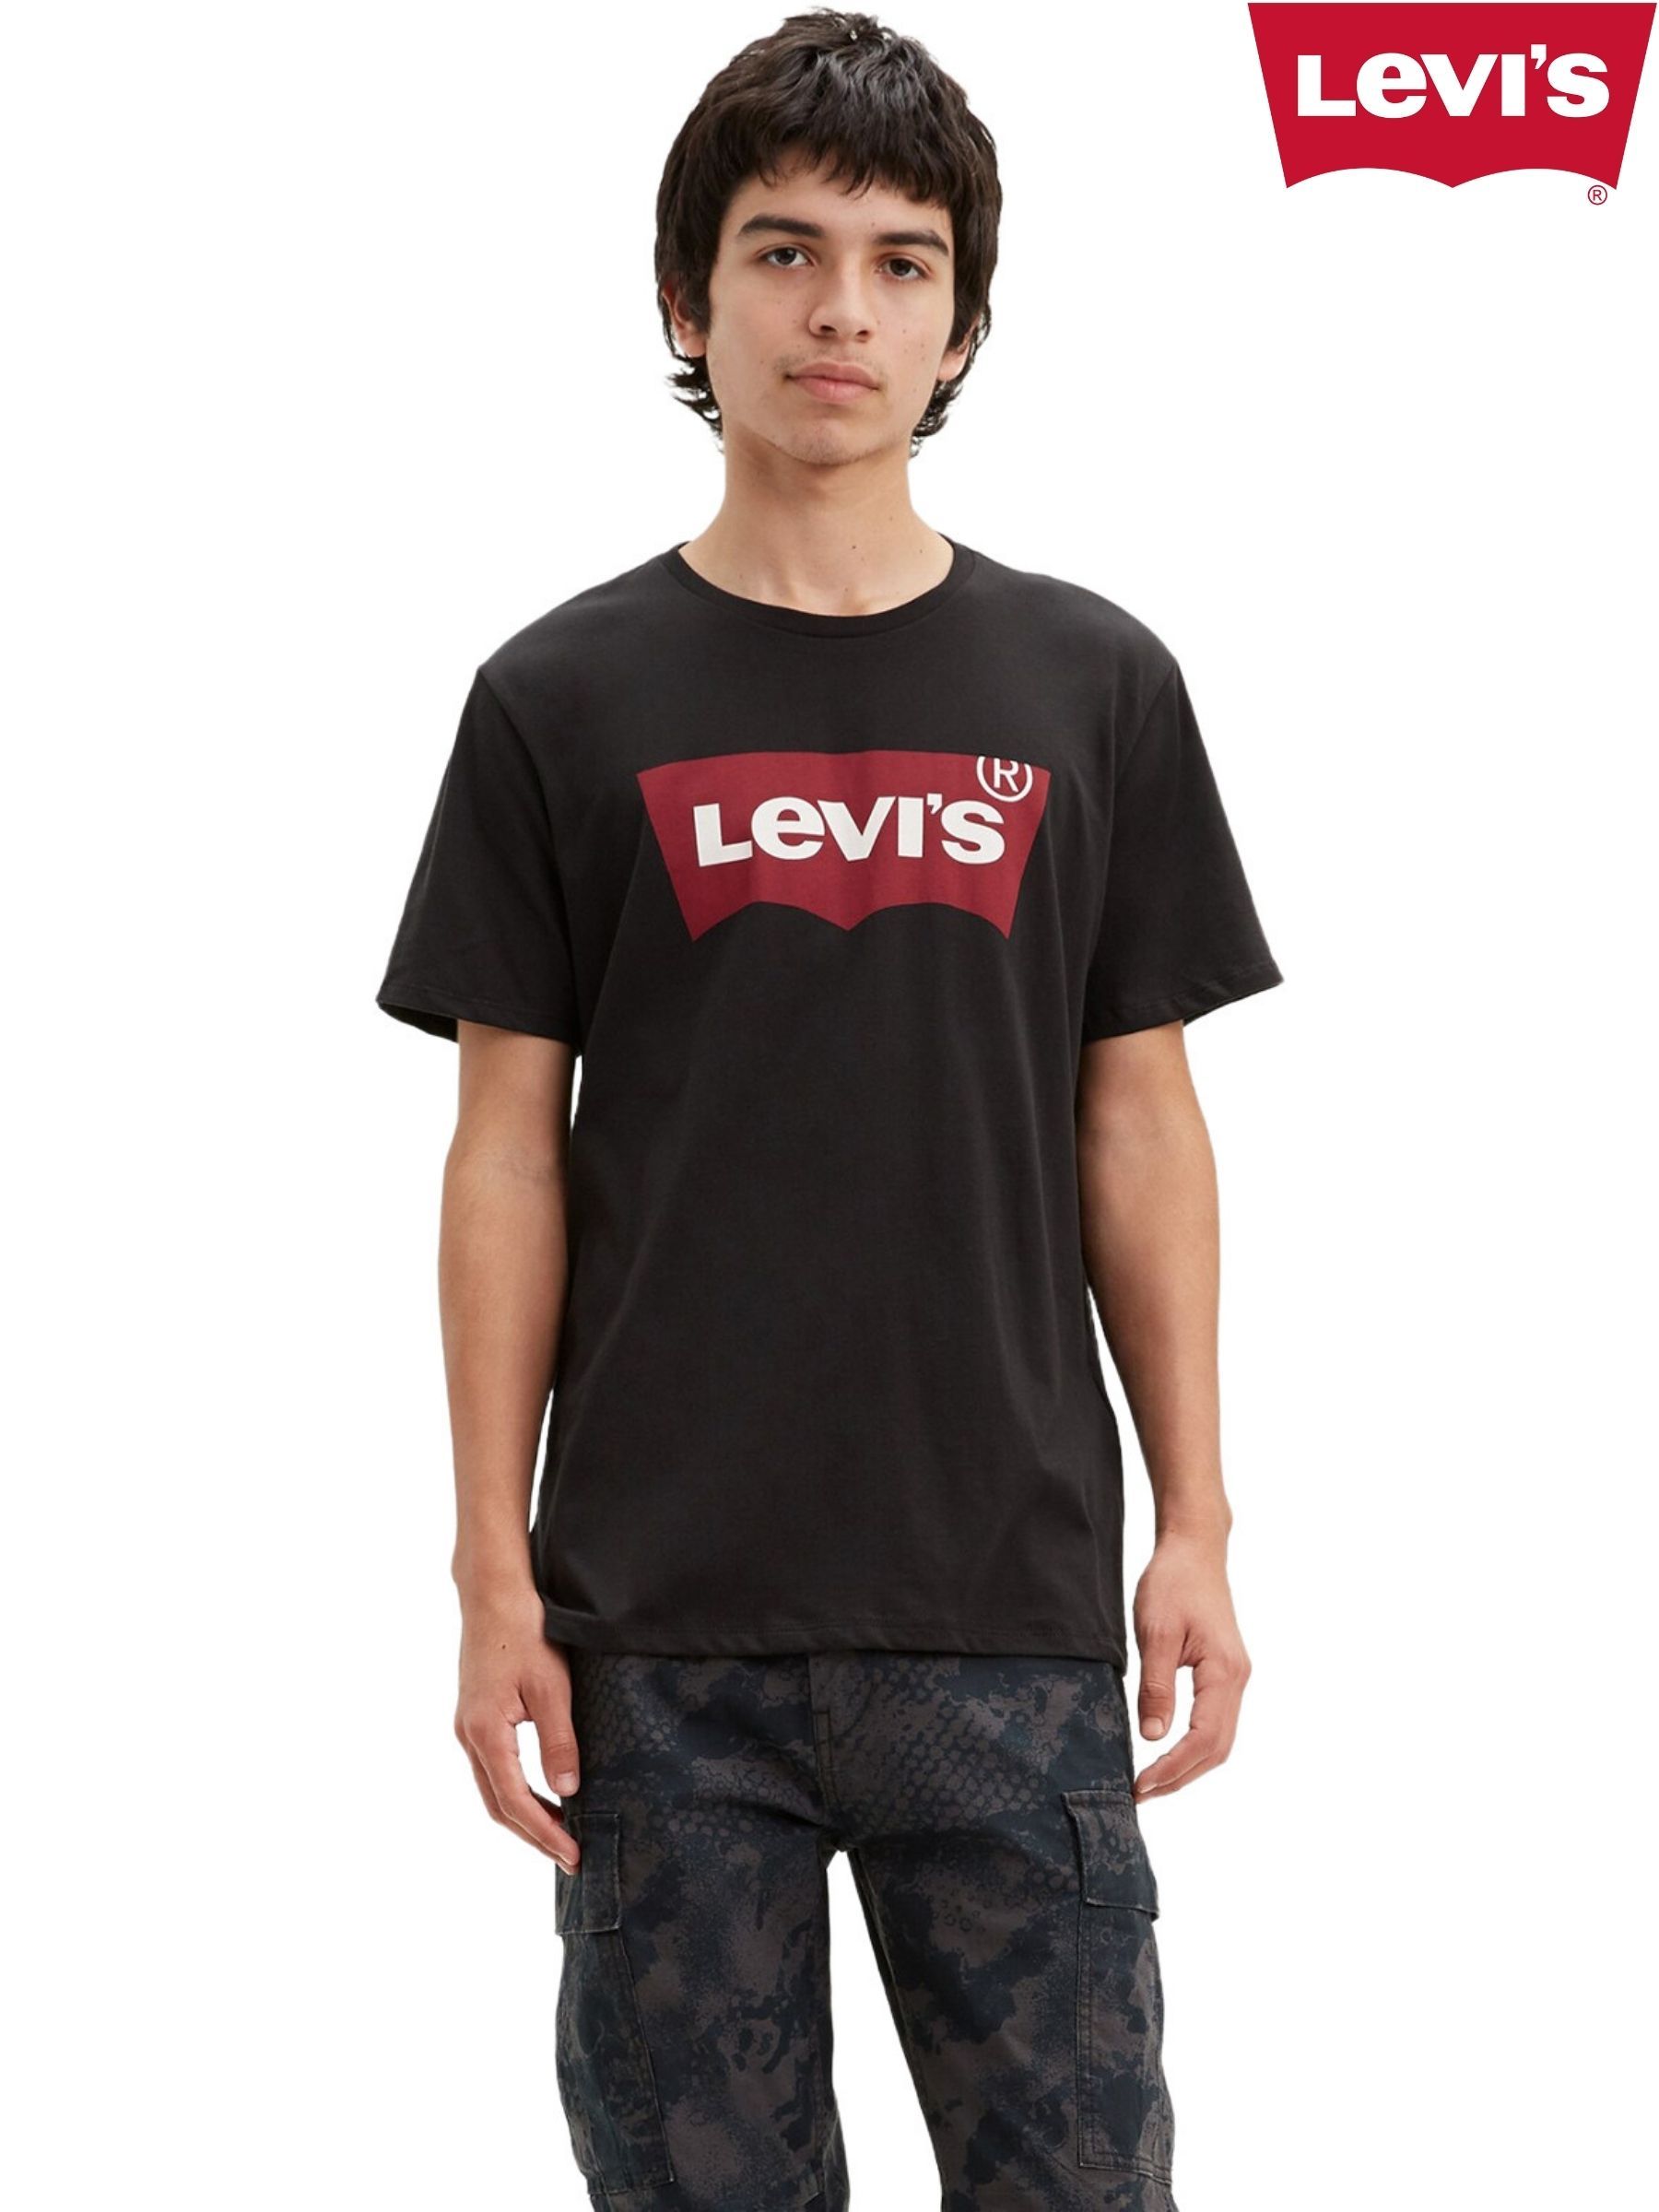 Купить футболку levis. Футболка левайс оригинал. Levis футболка мужская черная. Футболка левайс черная мужская. Майка Levis мужские.